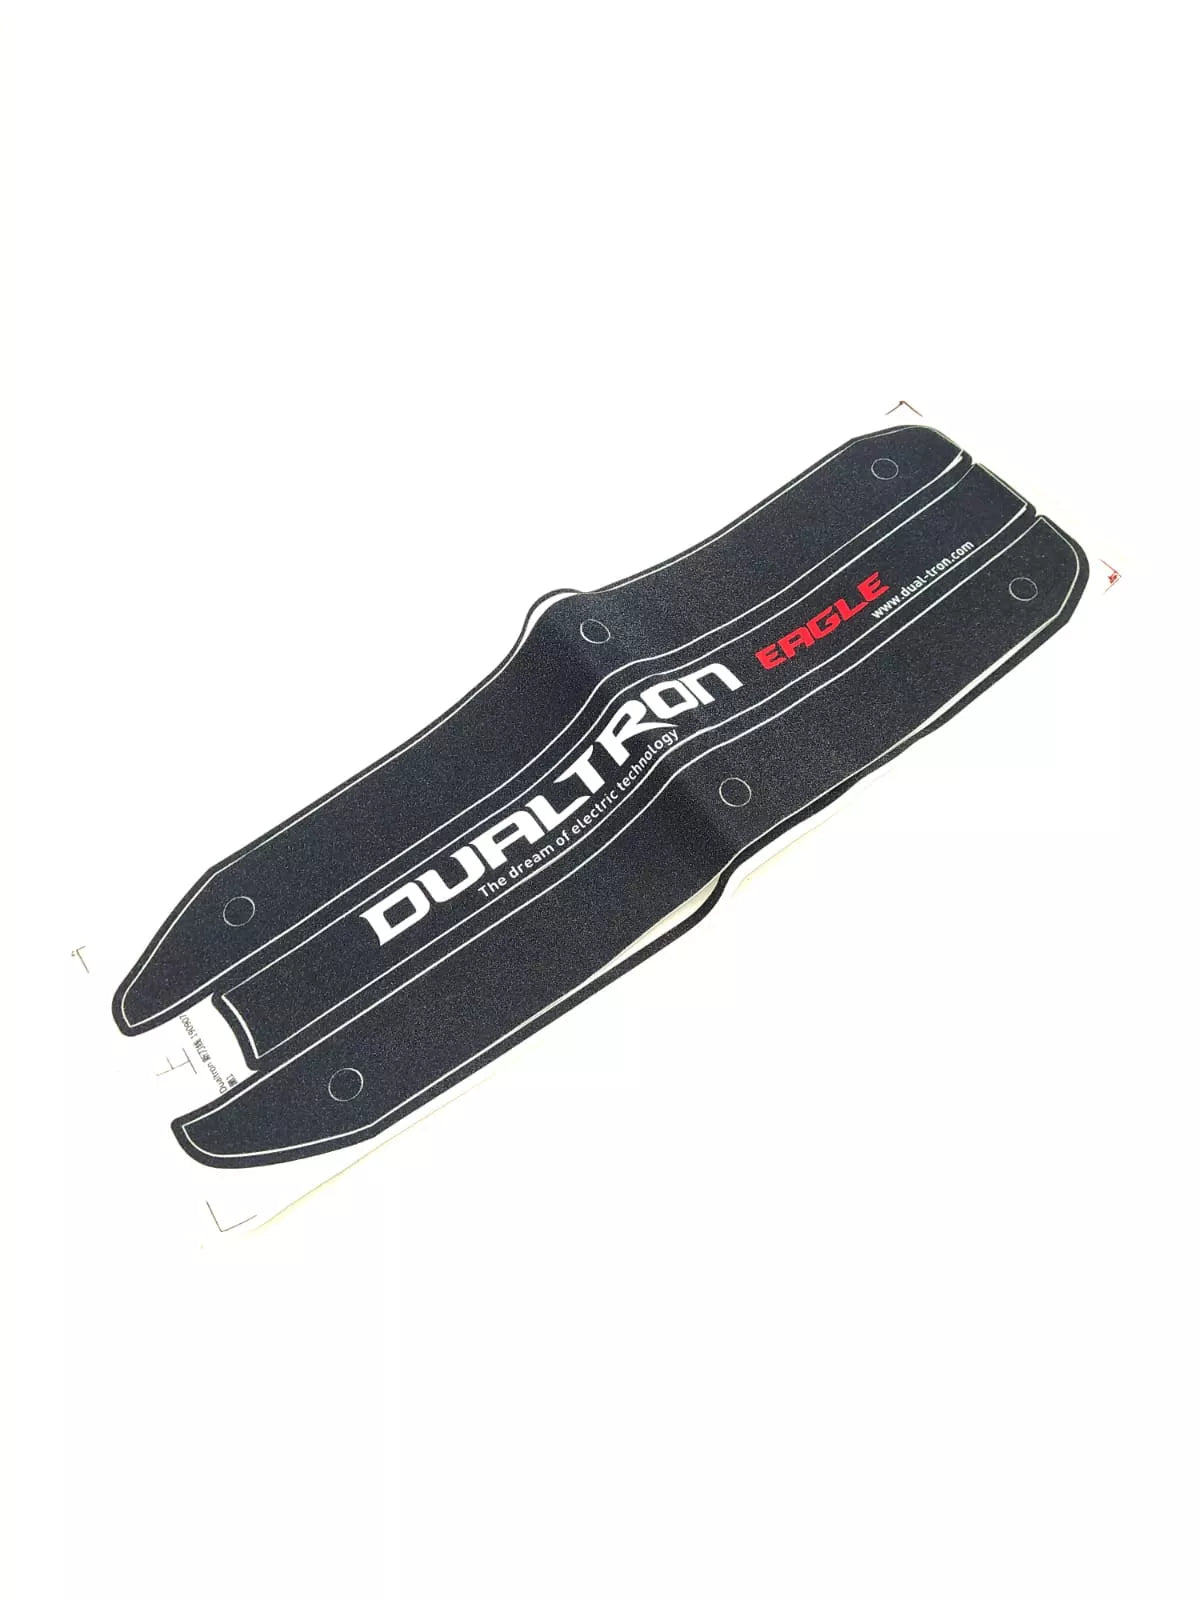 Dualtron Eagle | Grip du deck - Excellent Pièces détachées par Dualtron - Seulement €19.99! Acheter maintenant sur Nexyo.fr